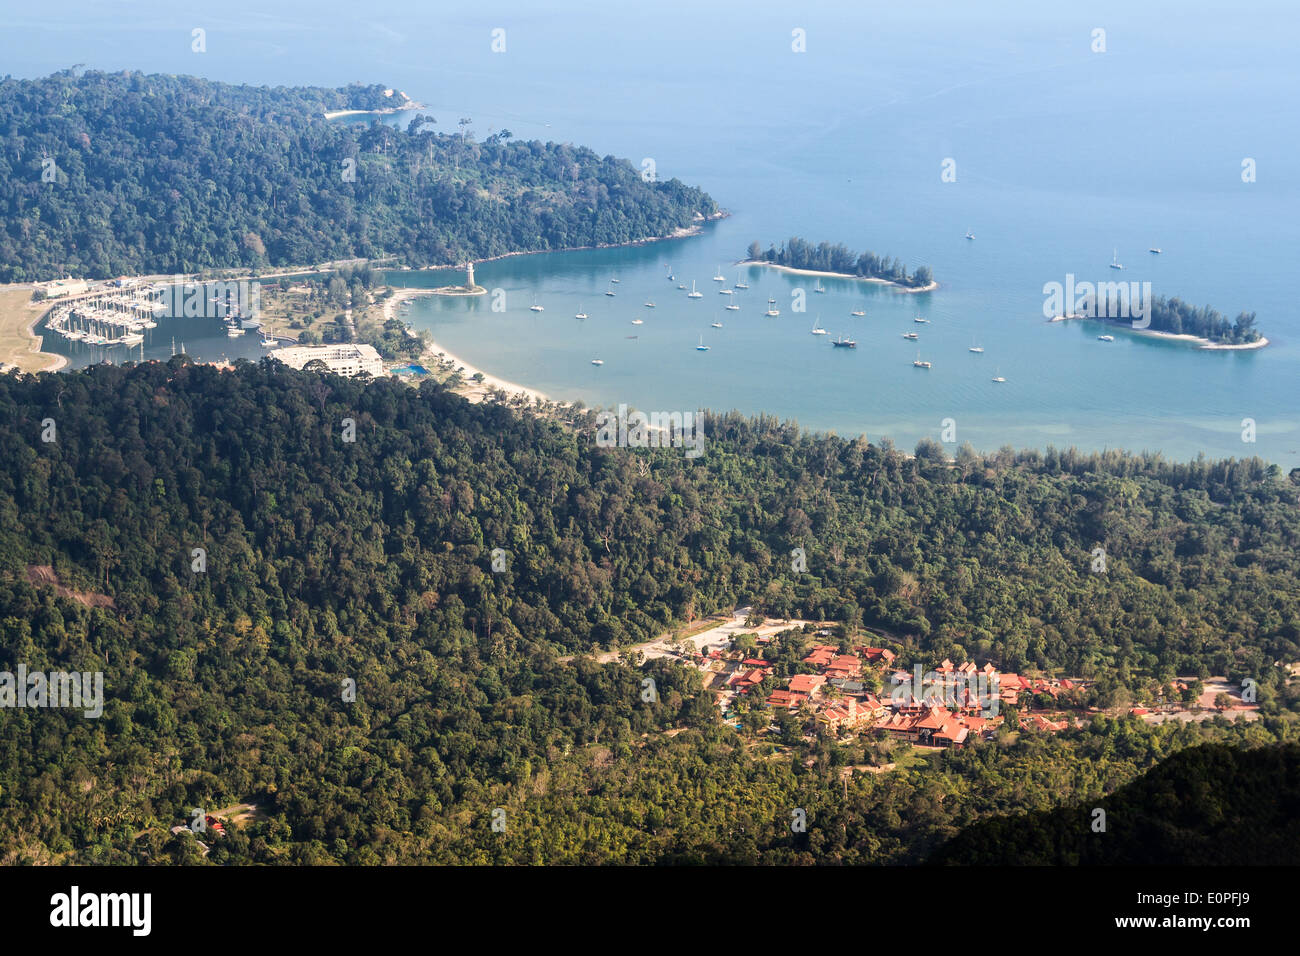 Vue aérienne d'un village et des bateaux sur la mer à Langkawi, Malaisie. Banque D'Images